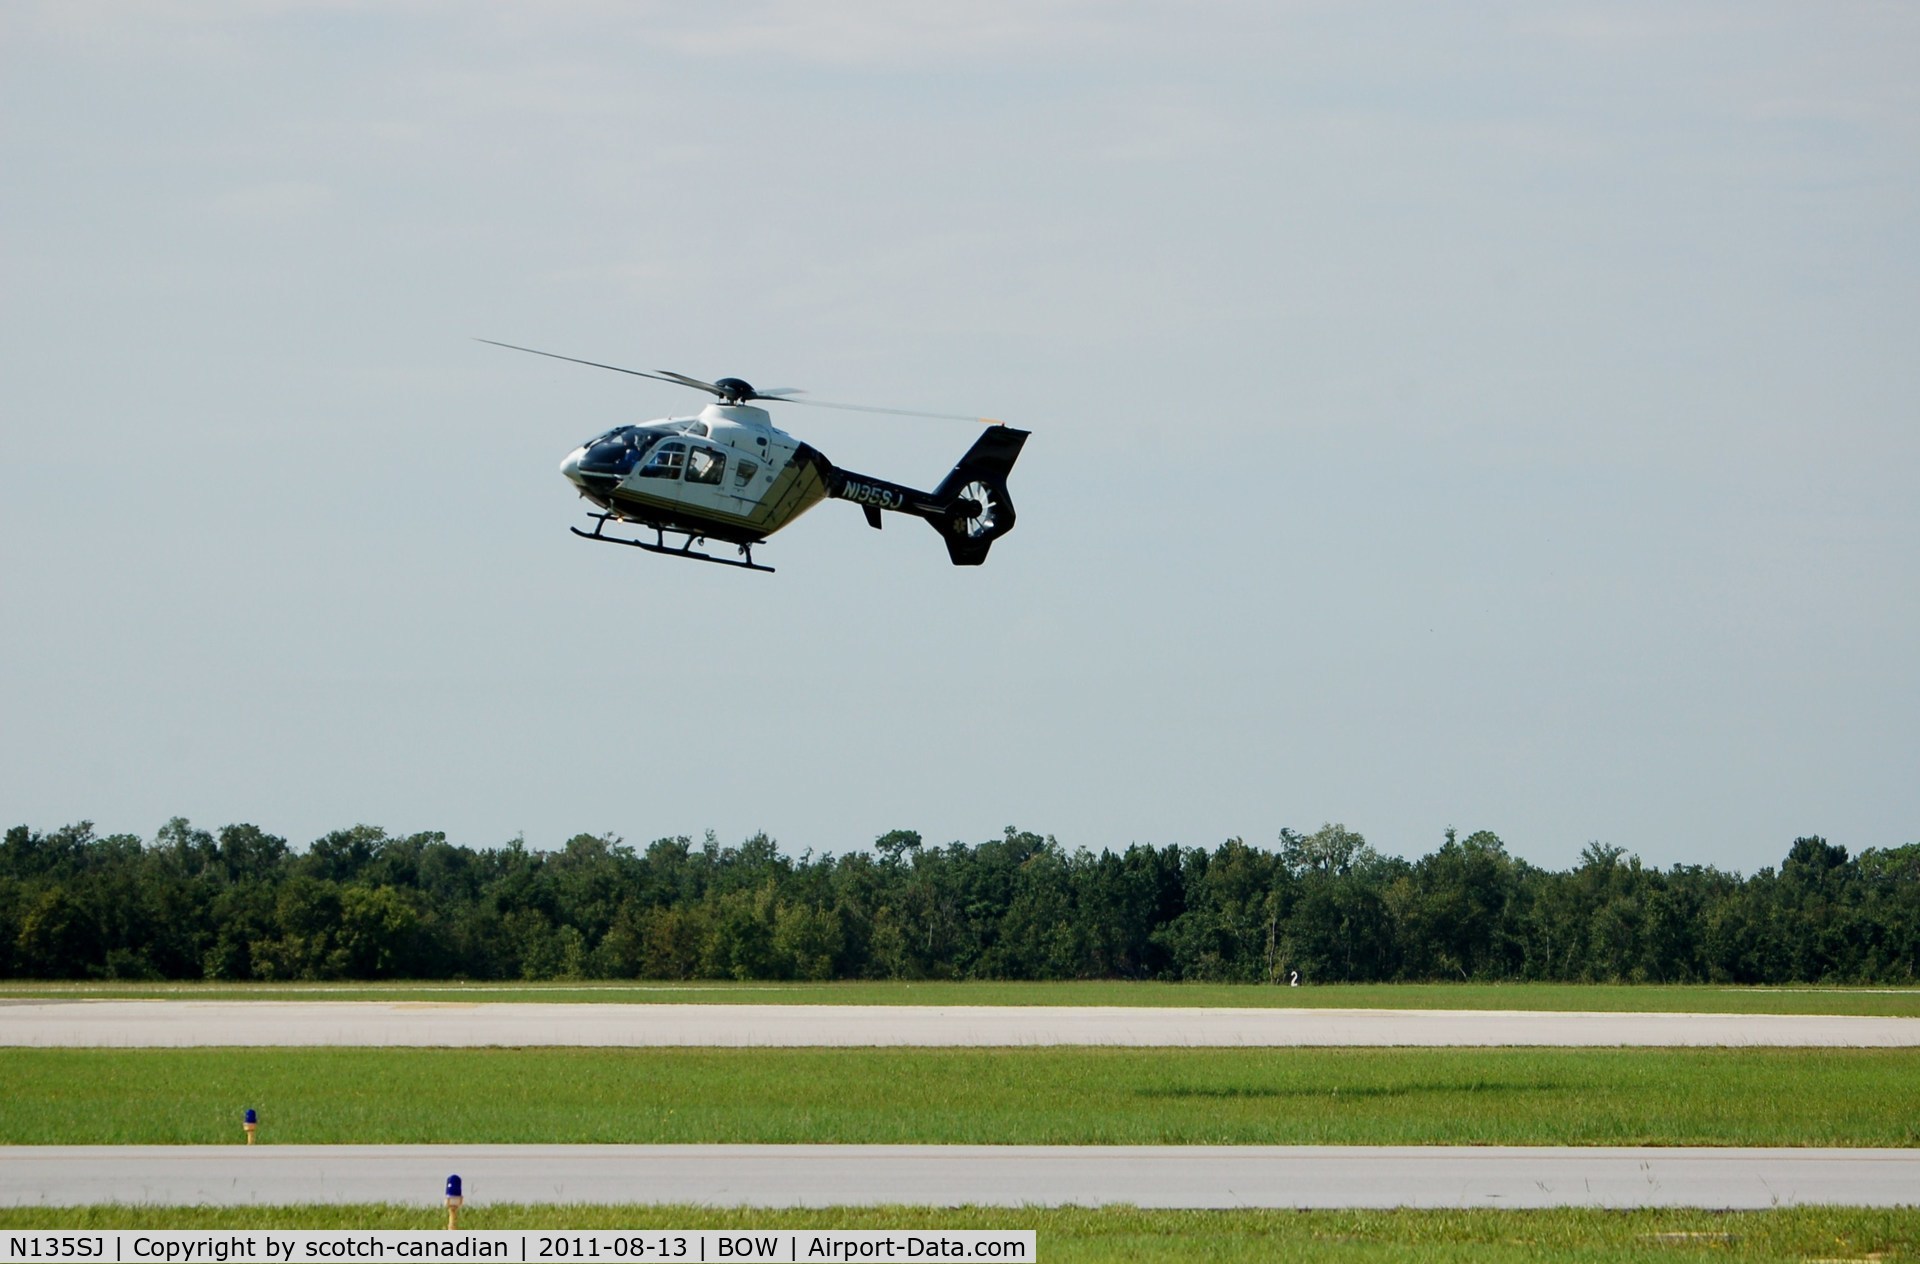 N135SJ, 1998 Eurocopter EC-135P-1 C/N 0054, 1998 Eurocopter Deutschland GMBH EC135P1 N135SJ at Bartow Municipal Airport, Bartow, FL